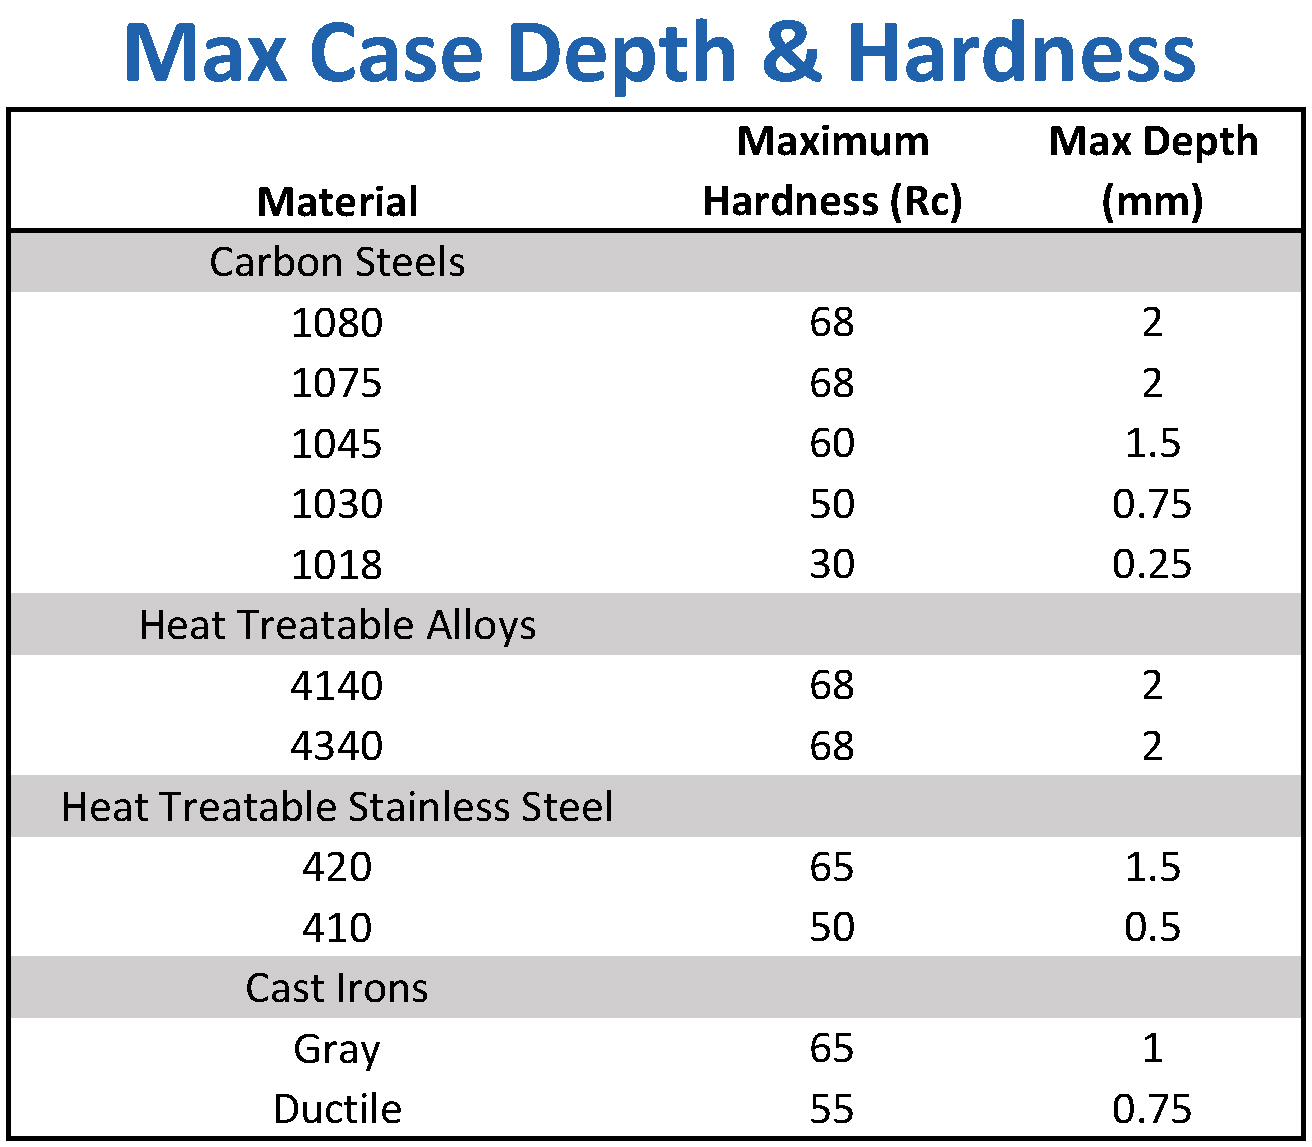 Max Case Depth & Hardness